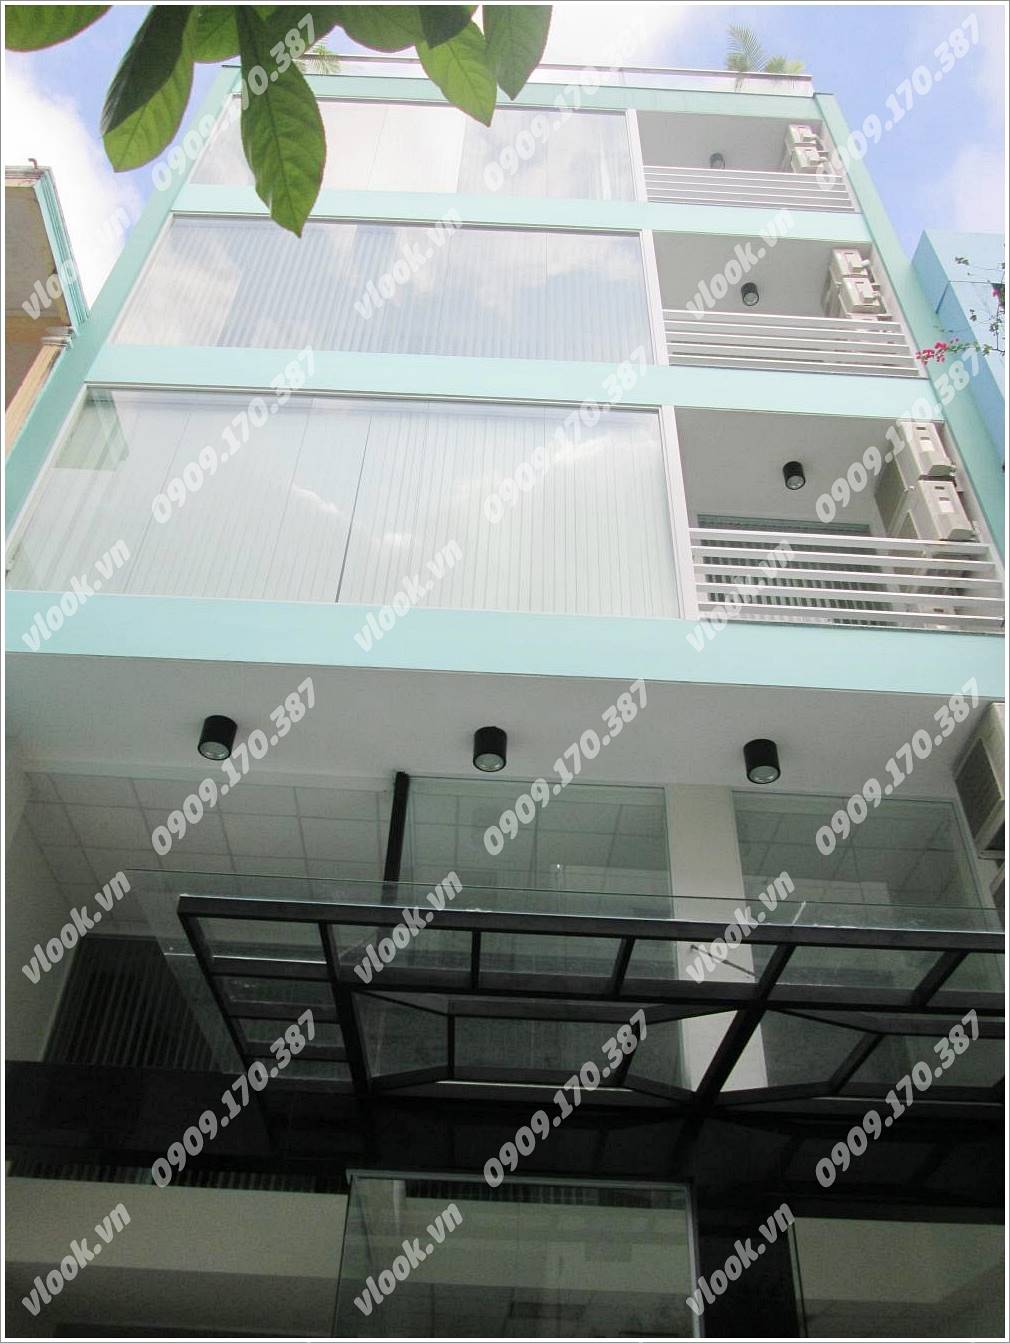 Cao ốc văn phòng cho thuê New Star Building Nguyễn Trọng Tuyển, Quận Phú Nhuận, TP.HCM - vlook.vn